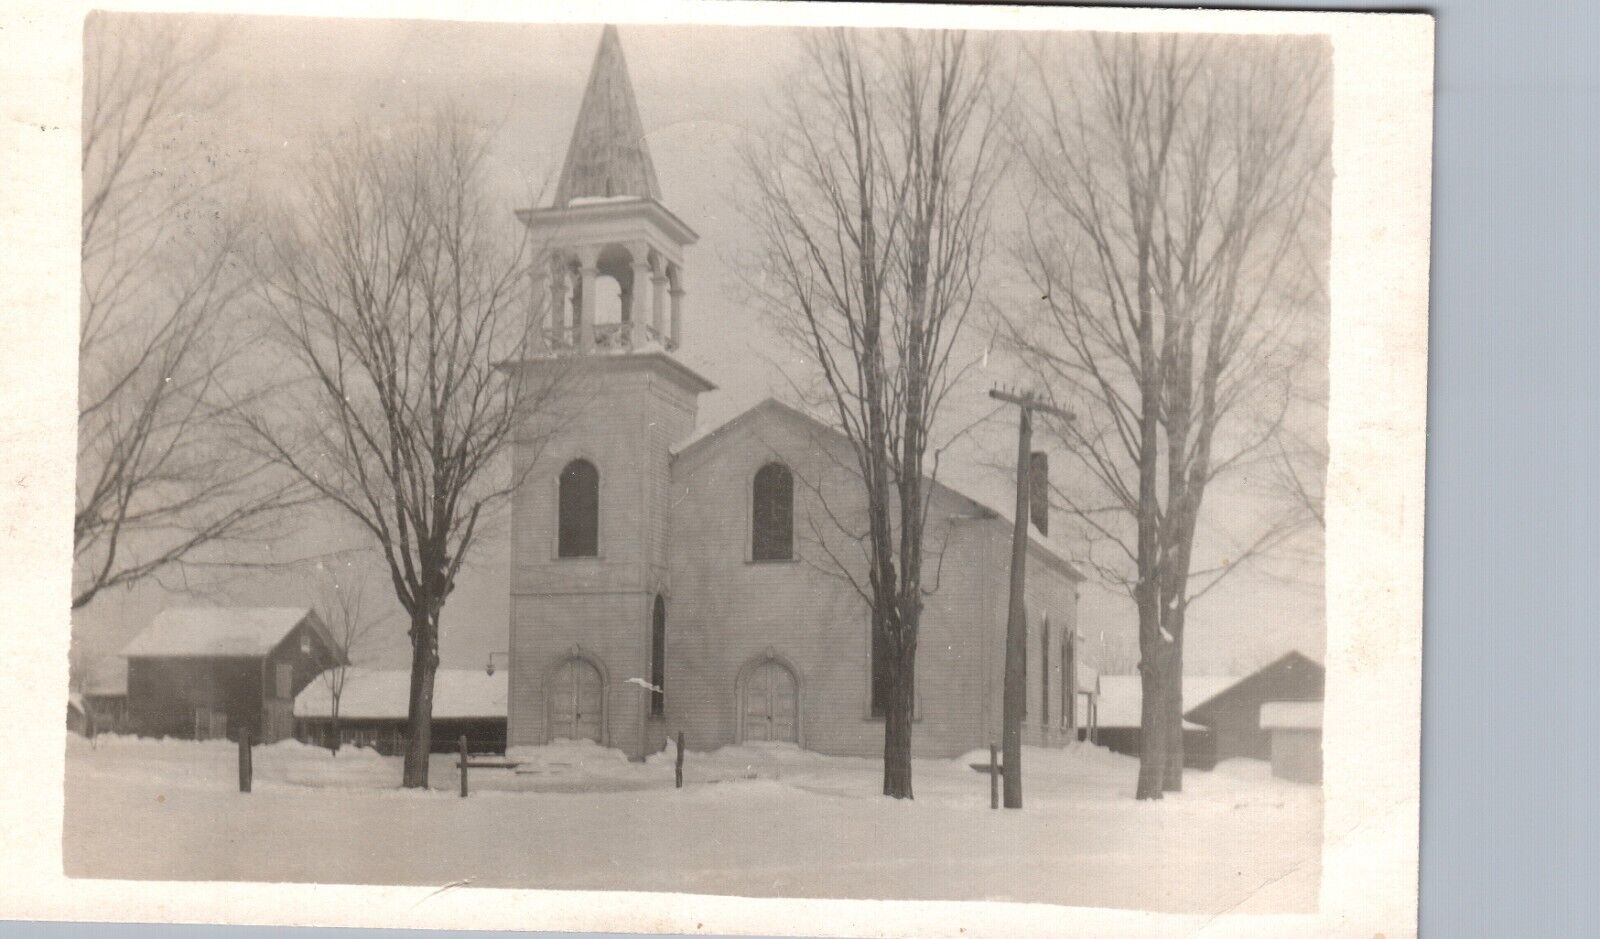 HISTORIC CHURCH canajoharie ny real photo postcard rppc new york 